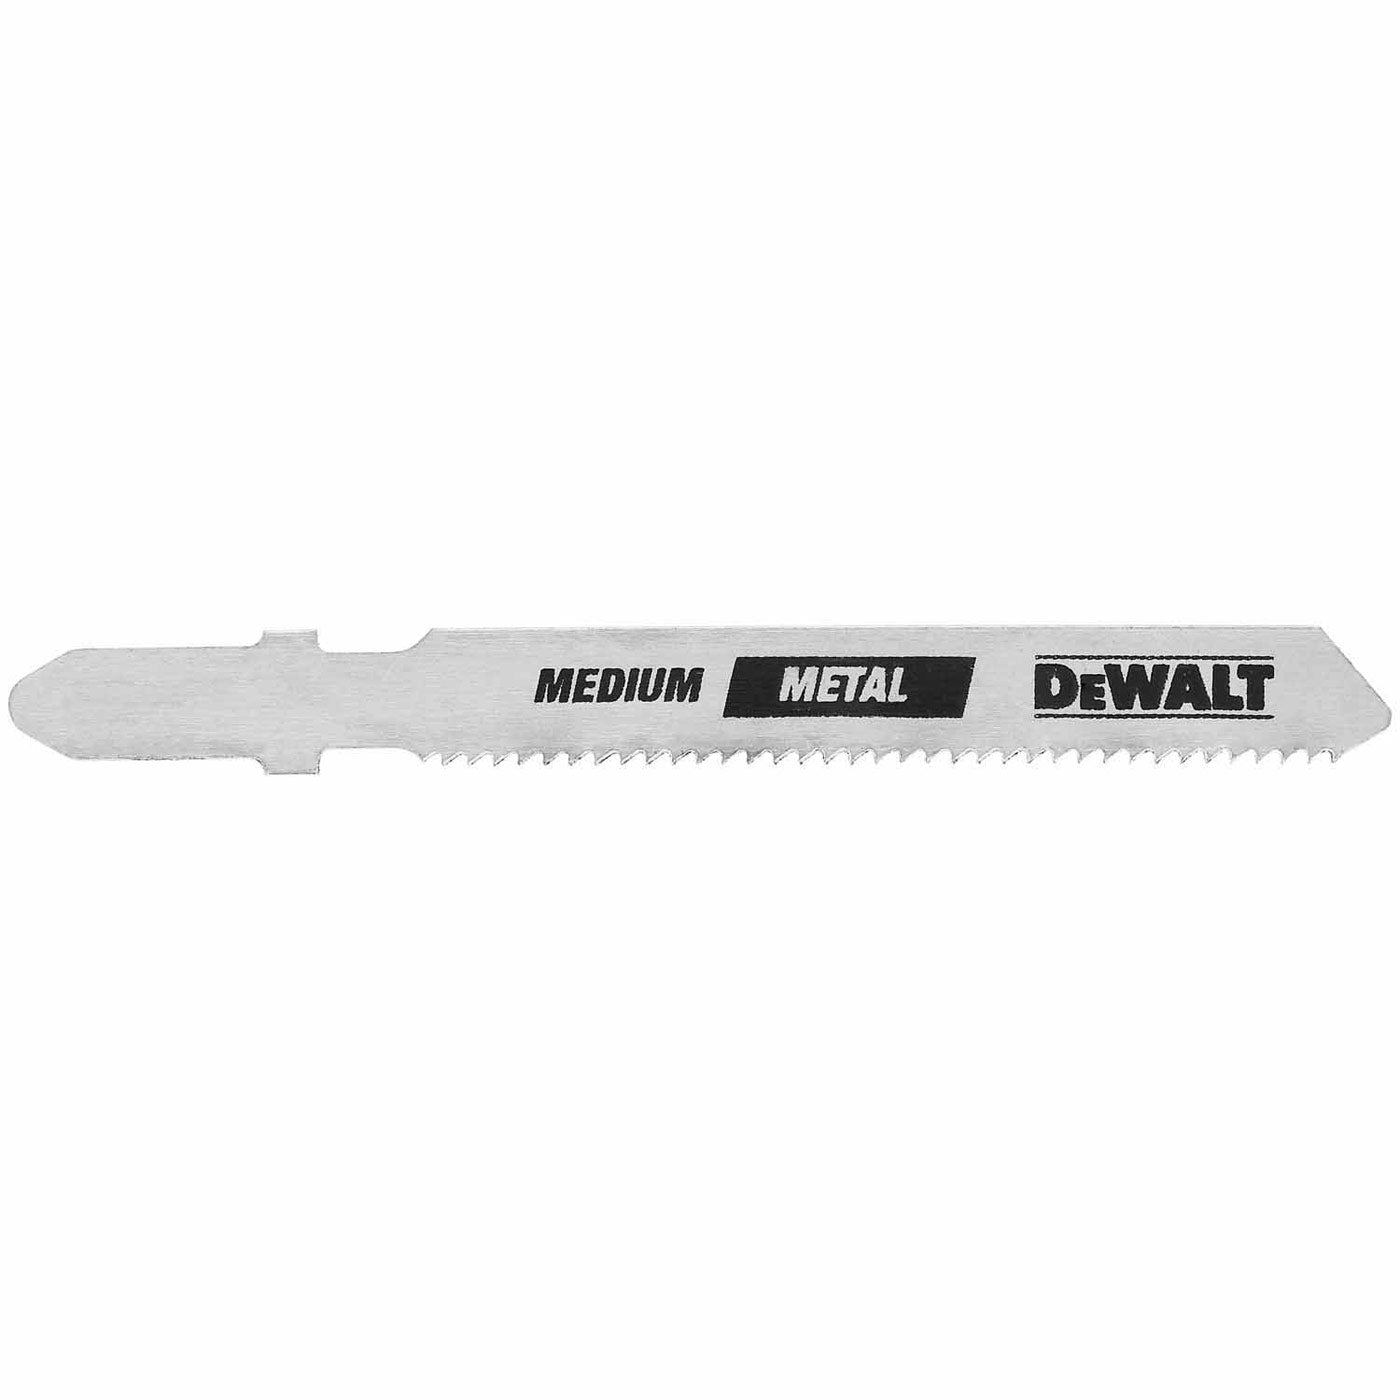 DeWalt DW3778-5 3" 32 TPI T-Shank Cobalt Steel Jig Saw Blade, 5 Pack